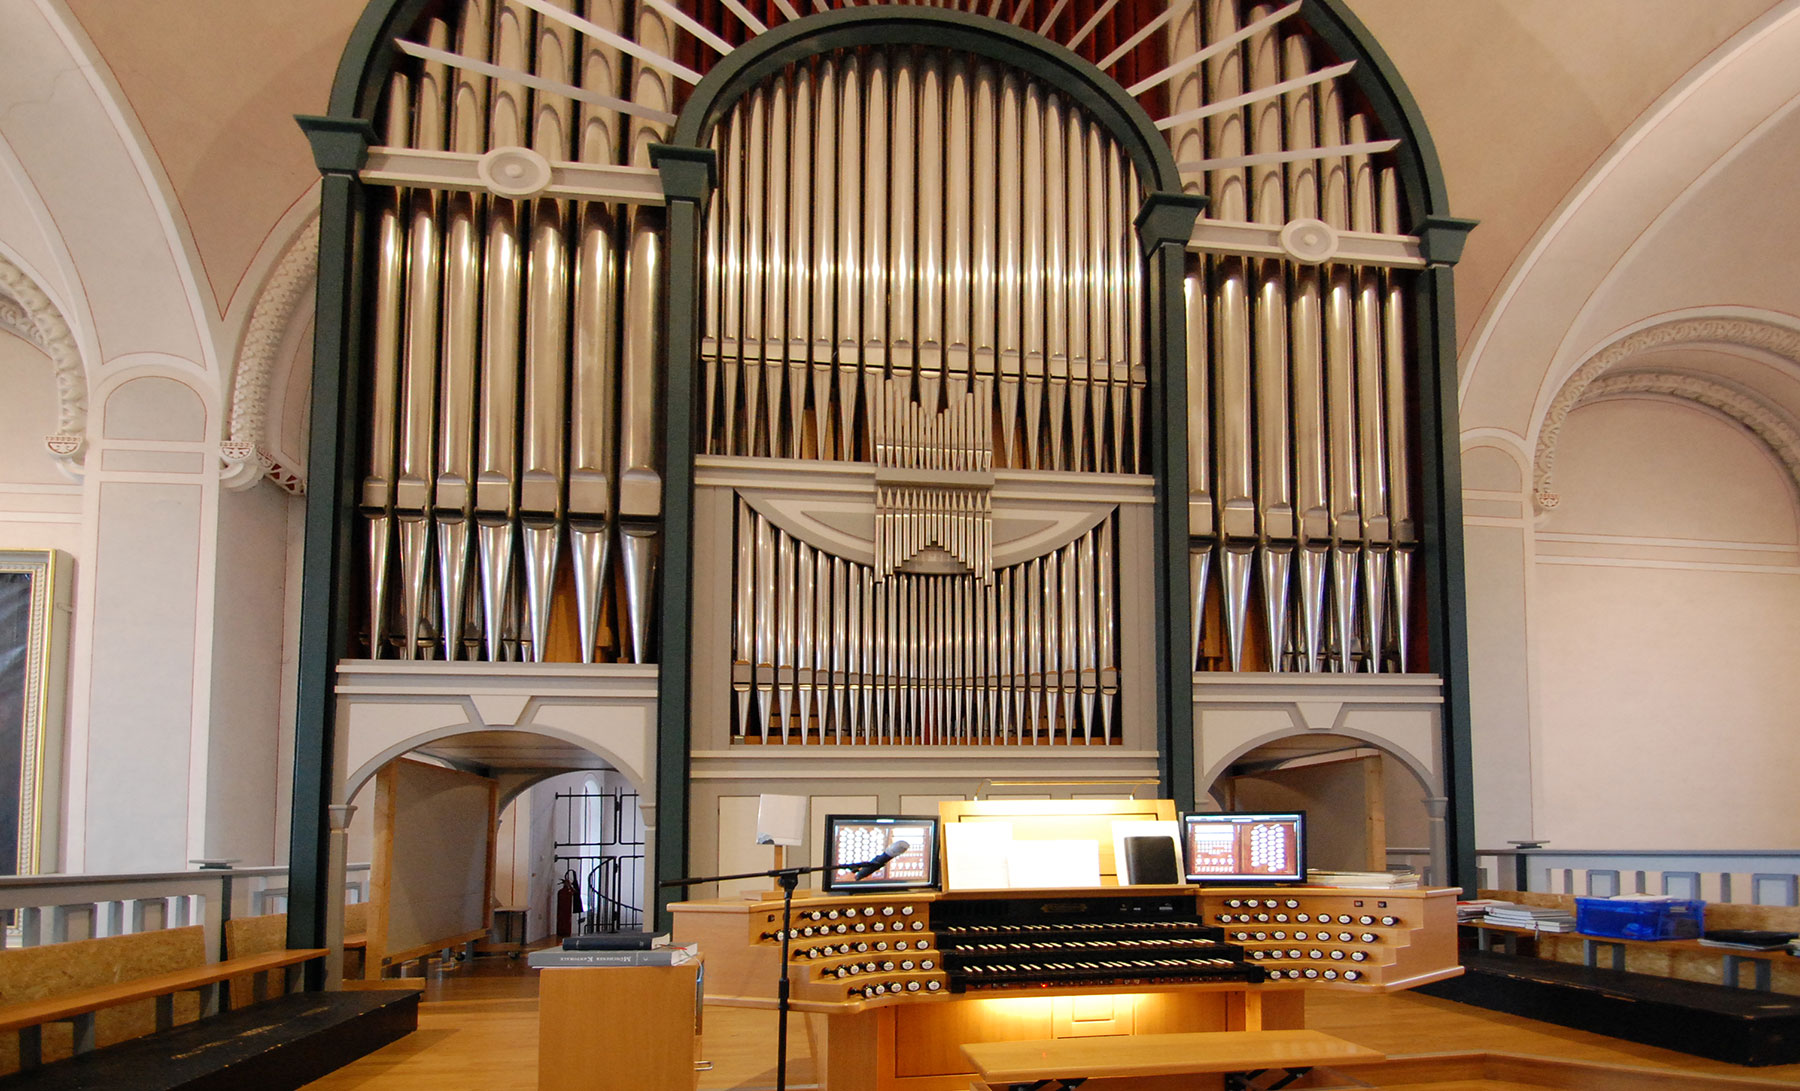 Orgel in der Kirche St. Marzellinus und Petrus, Vallendar (Foto: Brehm)